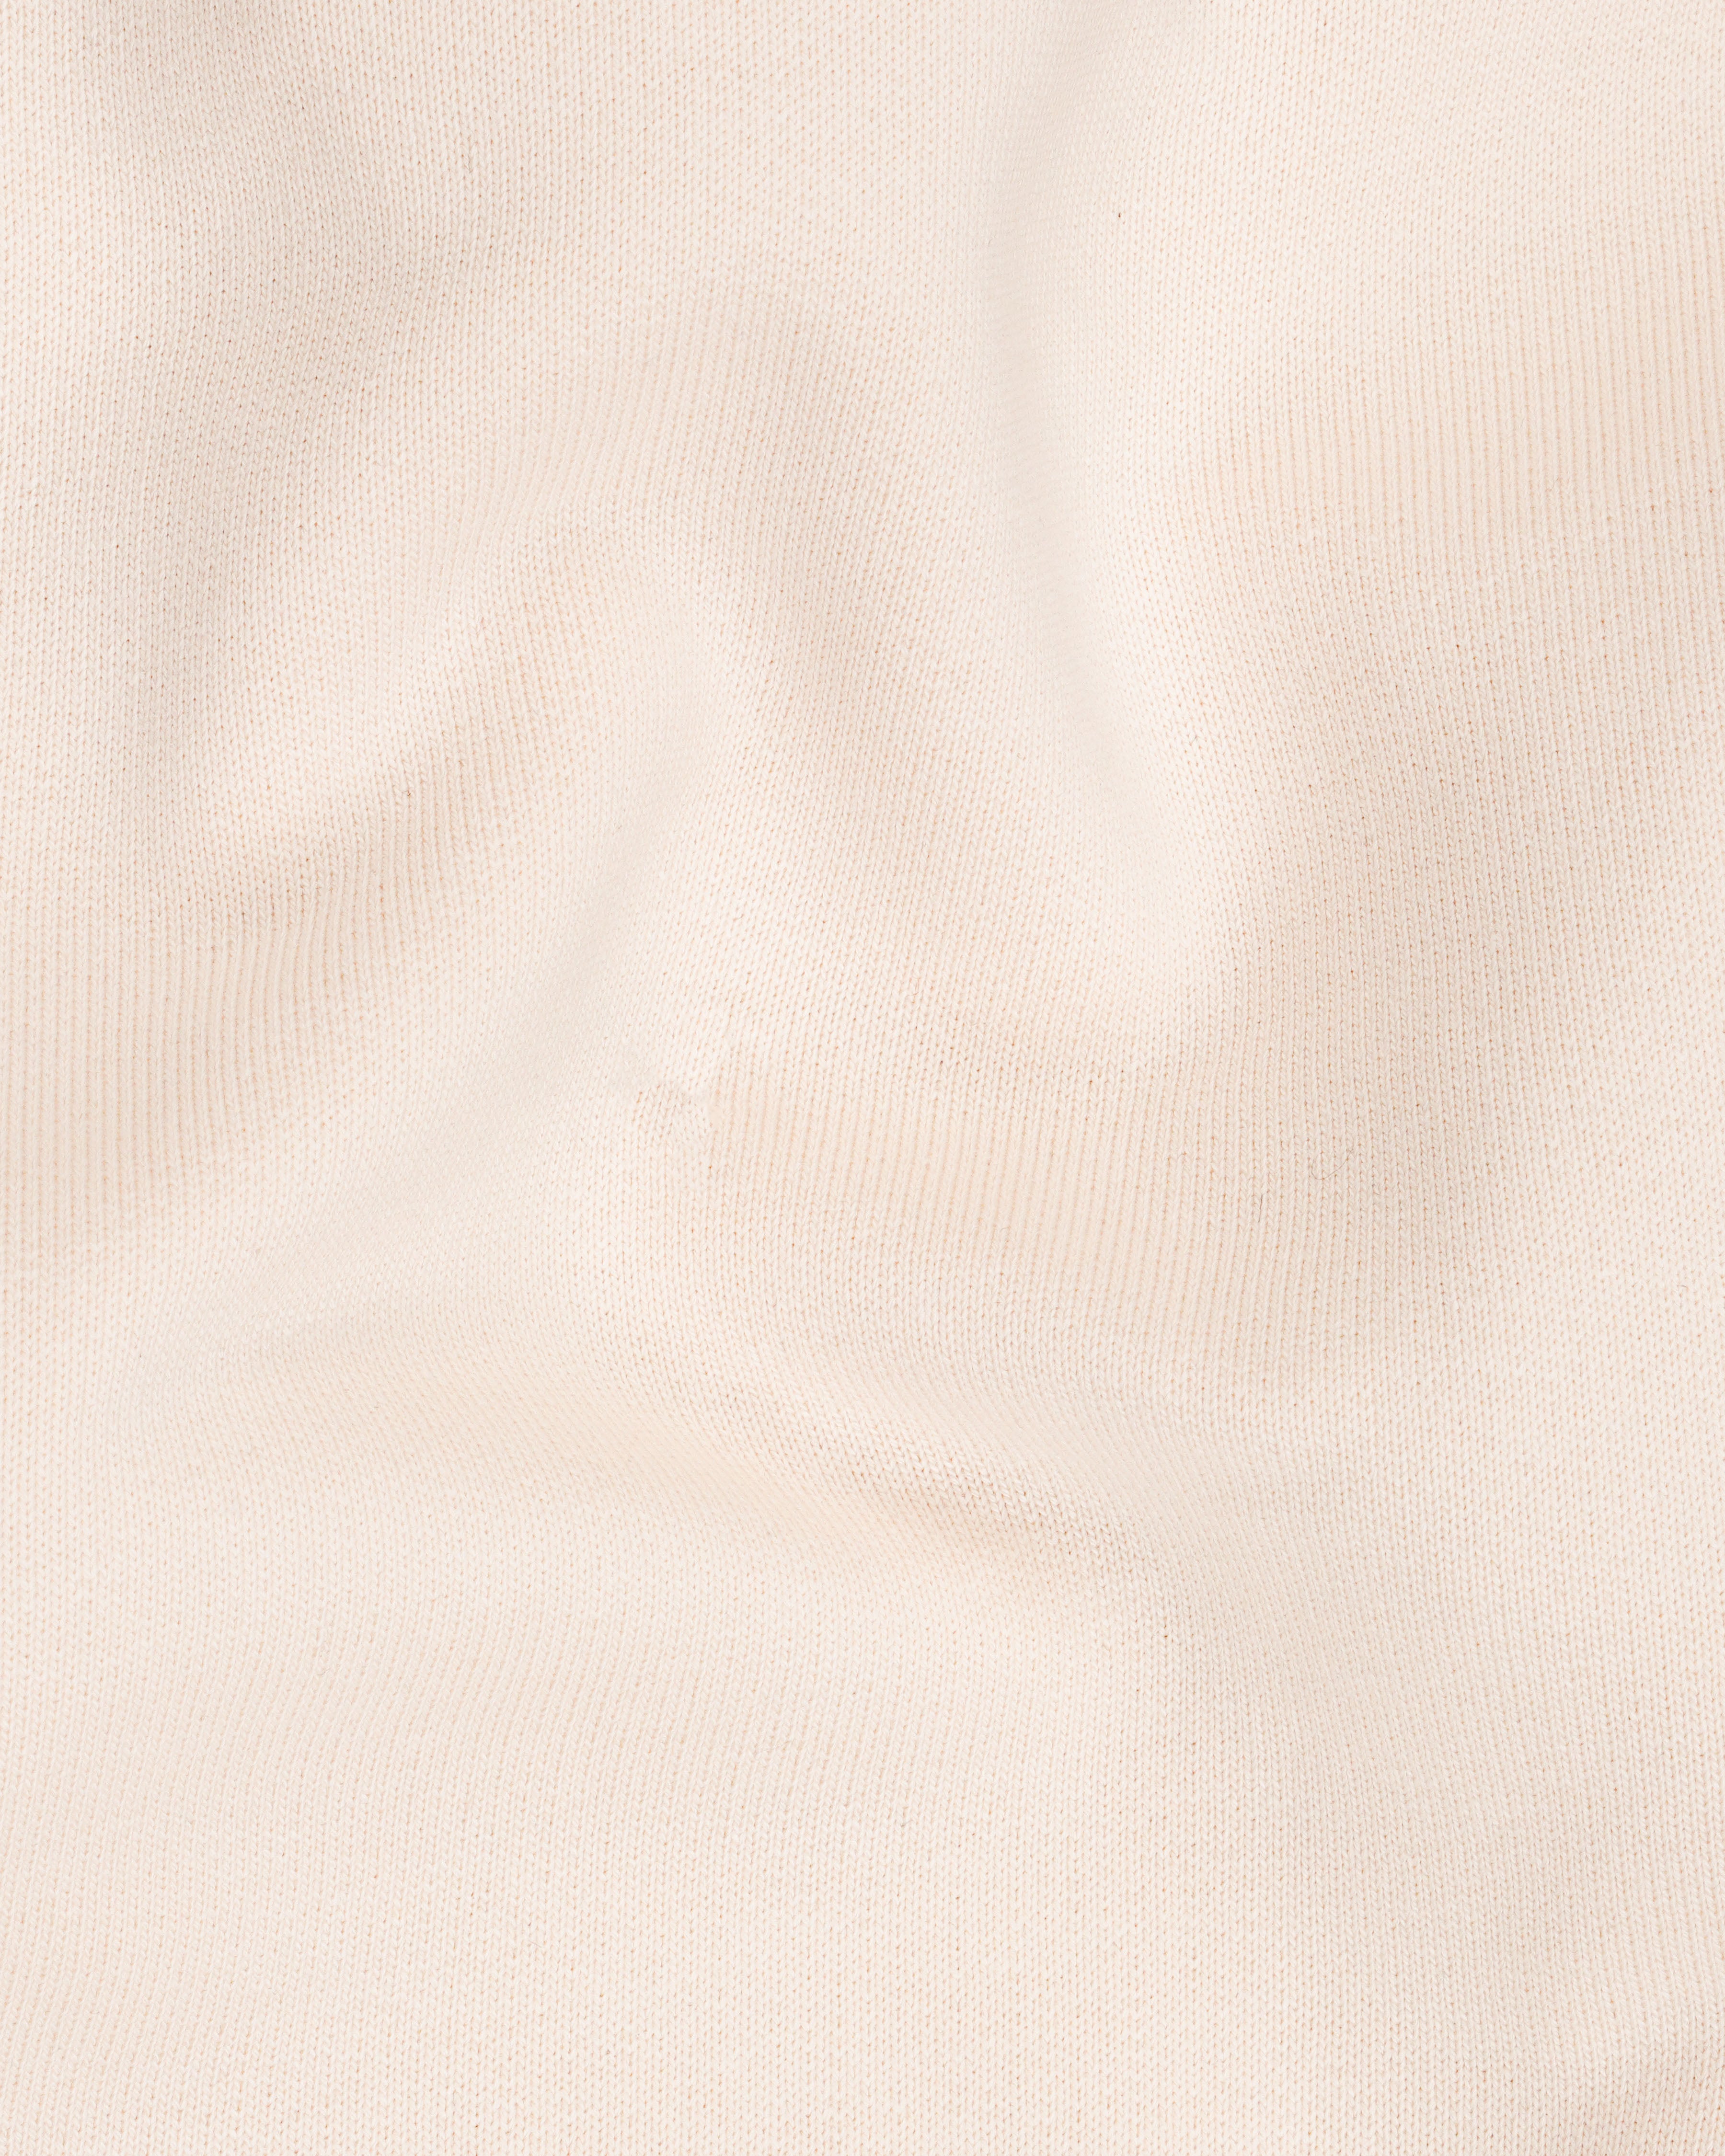 Bizarre Cream Full Sleeve Premium Cotton Heavyweight Sweatshirt TS621-B, TS621-M, TS621-L, TS621-XL, TS621-XXL, TS621-3XL, TS621-4XL